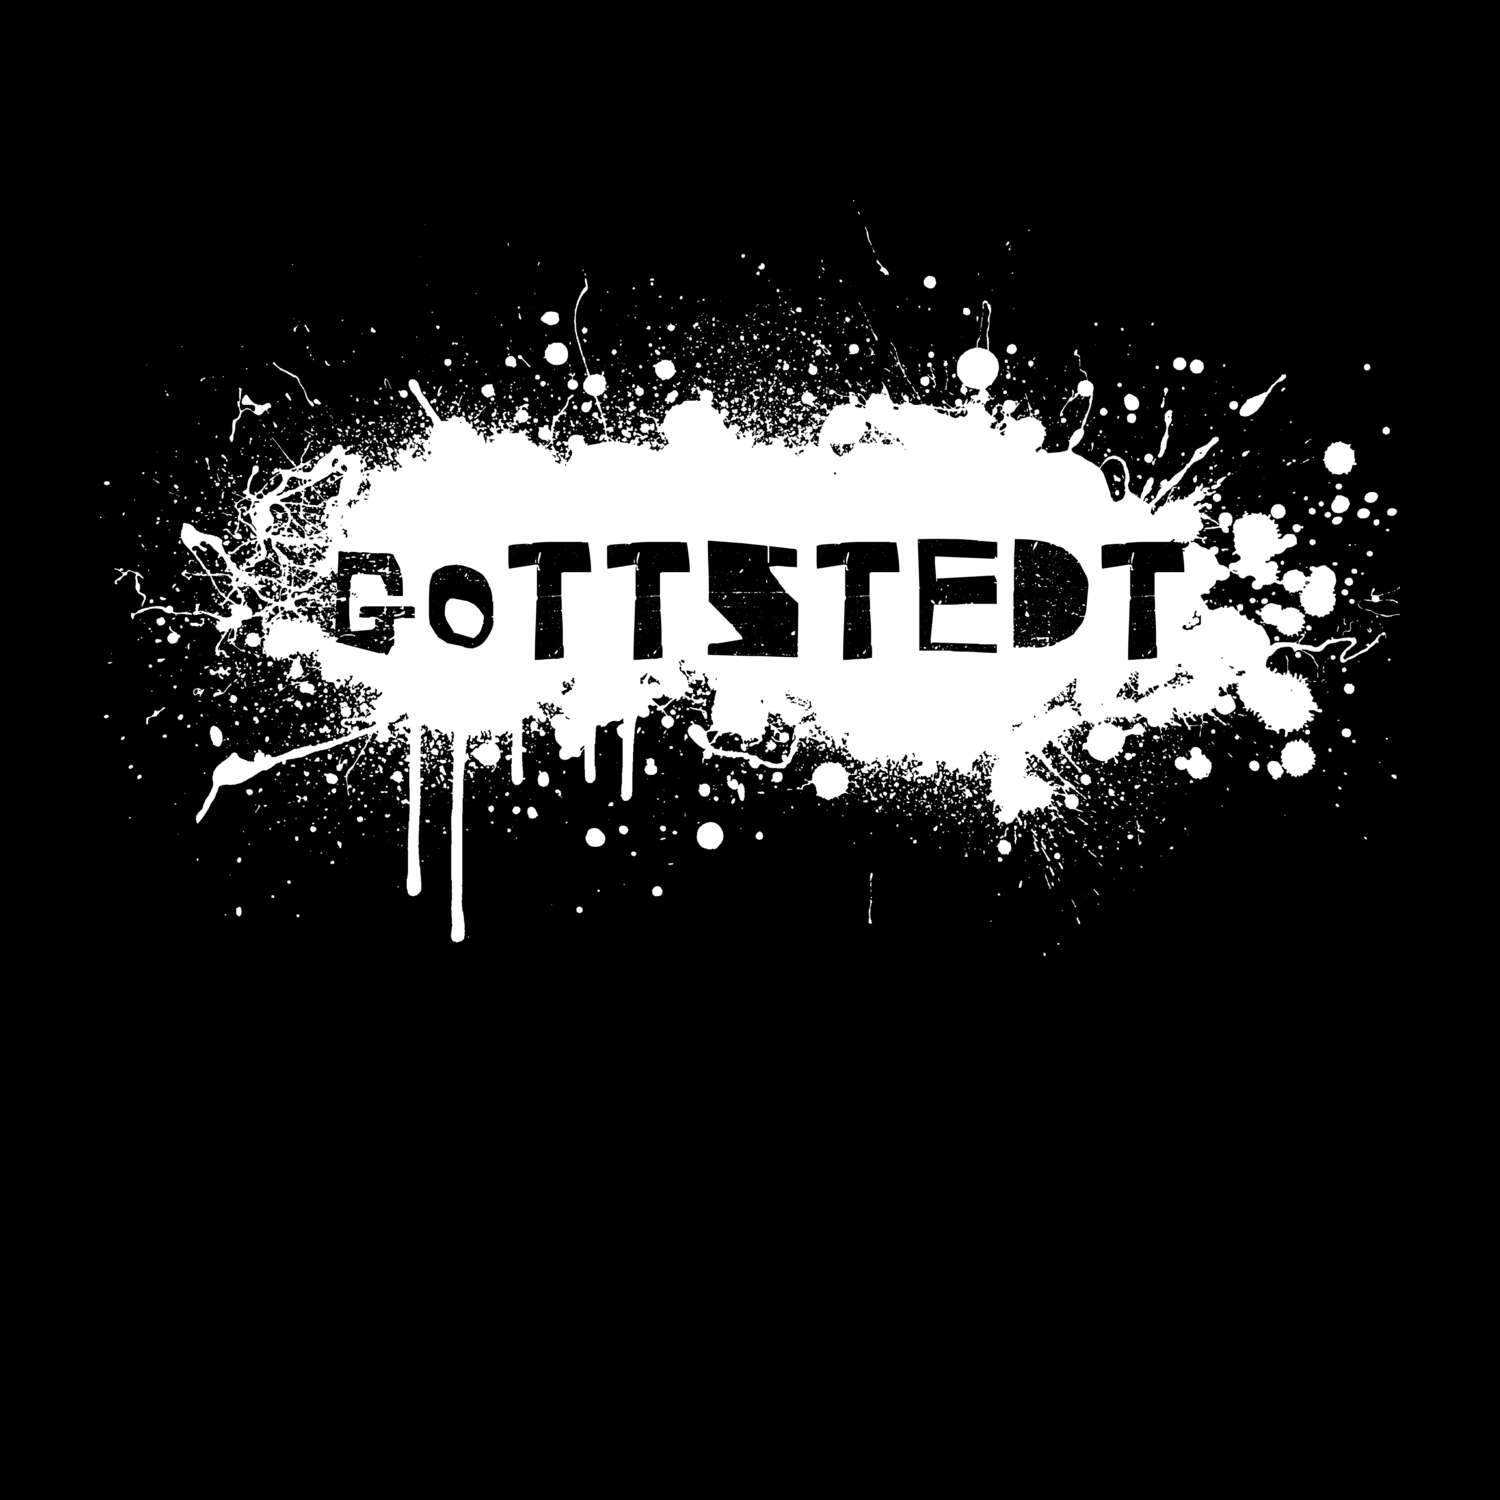 Gottstedt T-Shirt »Paint Splash Punk«